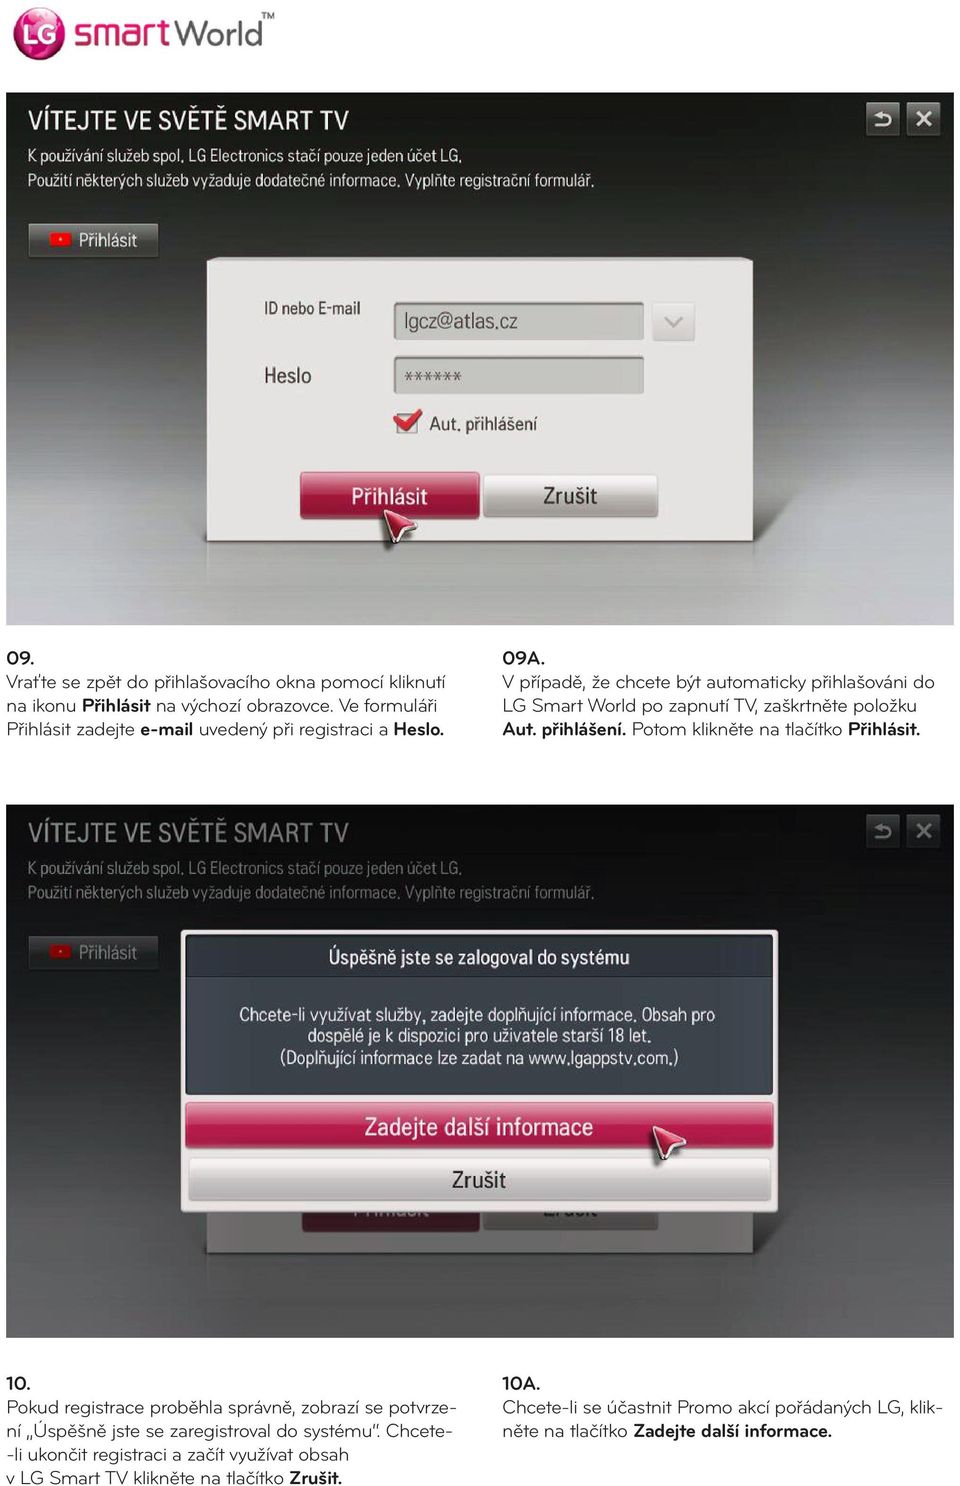 V případě, že chcete být automaticky přihlašováni do LG Smart World po zapnutí TV, zaškrtněte položku Aut. přihlášení. Potom klikněte na tlačítko Přihlásit.